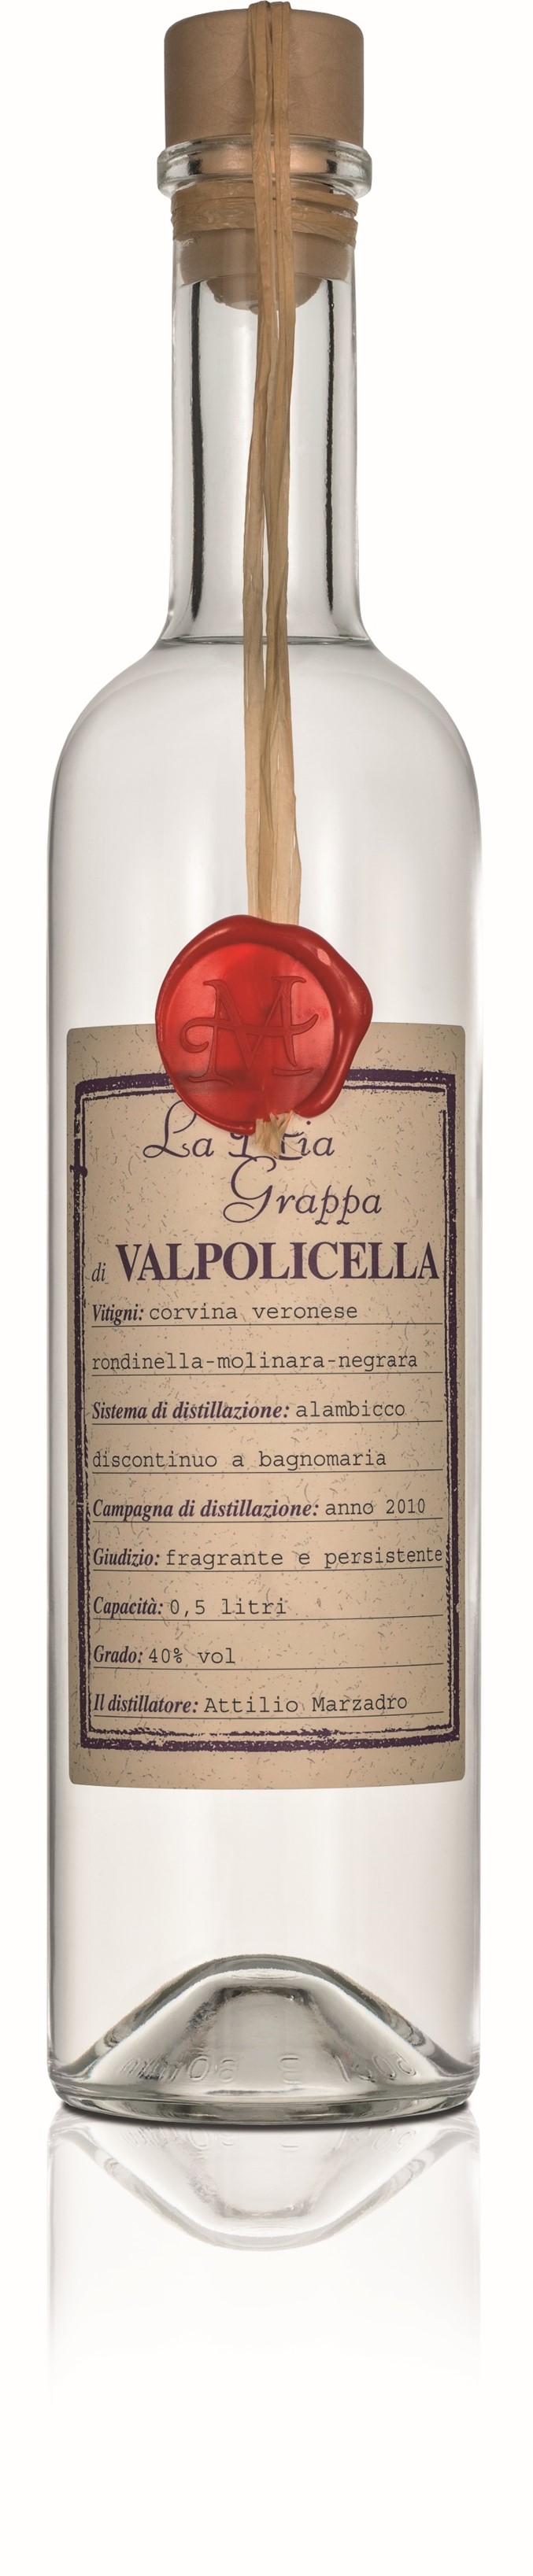 | Marzadro Mia | Italia Grappa Vino La 0,5l 40% Valpolicella di